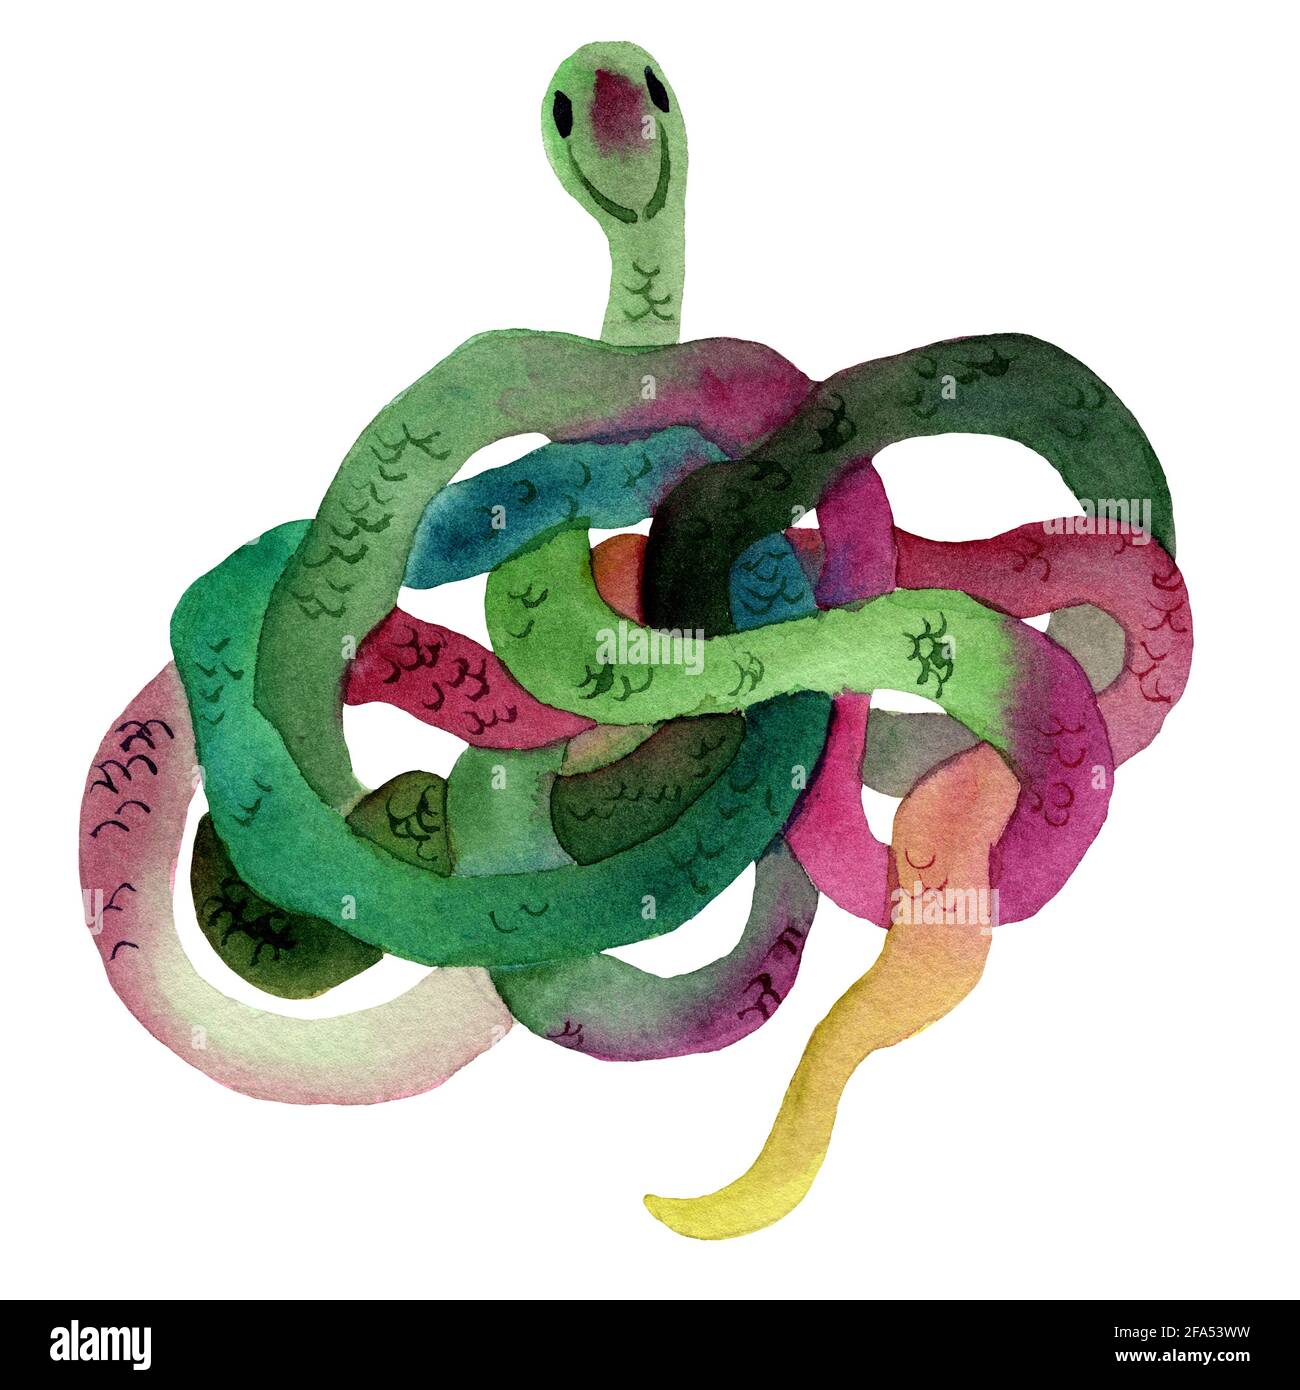 Aquarelle dessin à la main de serpents de couleur verte avec texture de peau. Le serpent est en forme d'anneau. Animal de style dessin animé. Banque D'Images